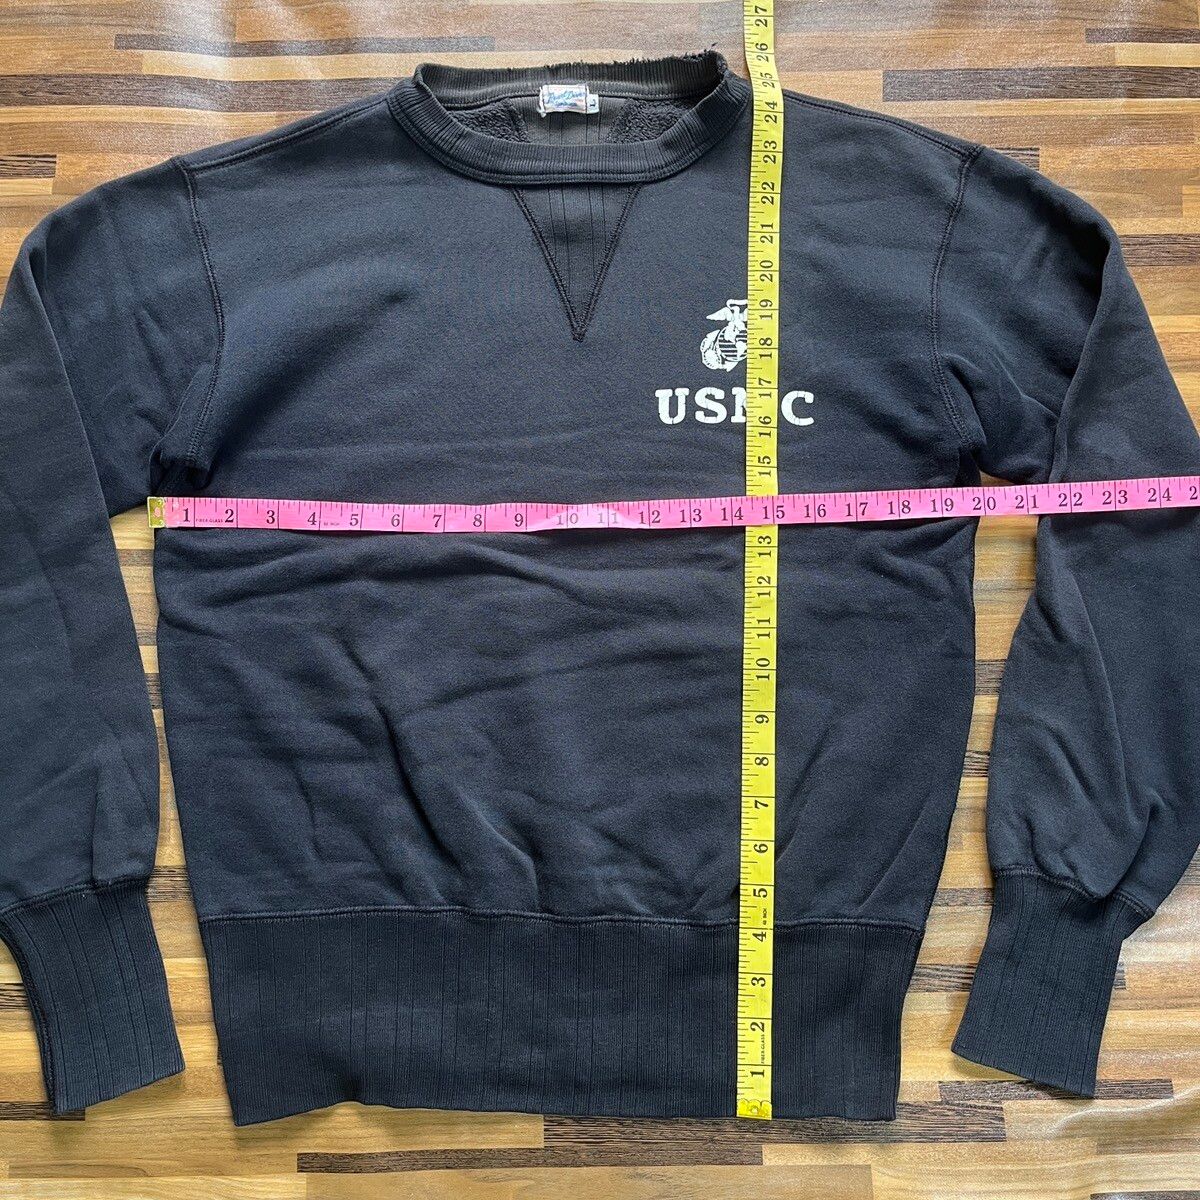 Vintage 1970s USMC Sweater US Marines Sportswear - 6